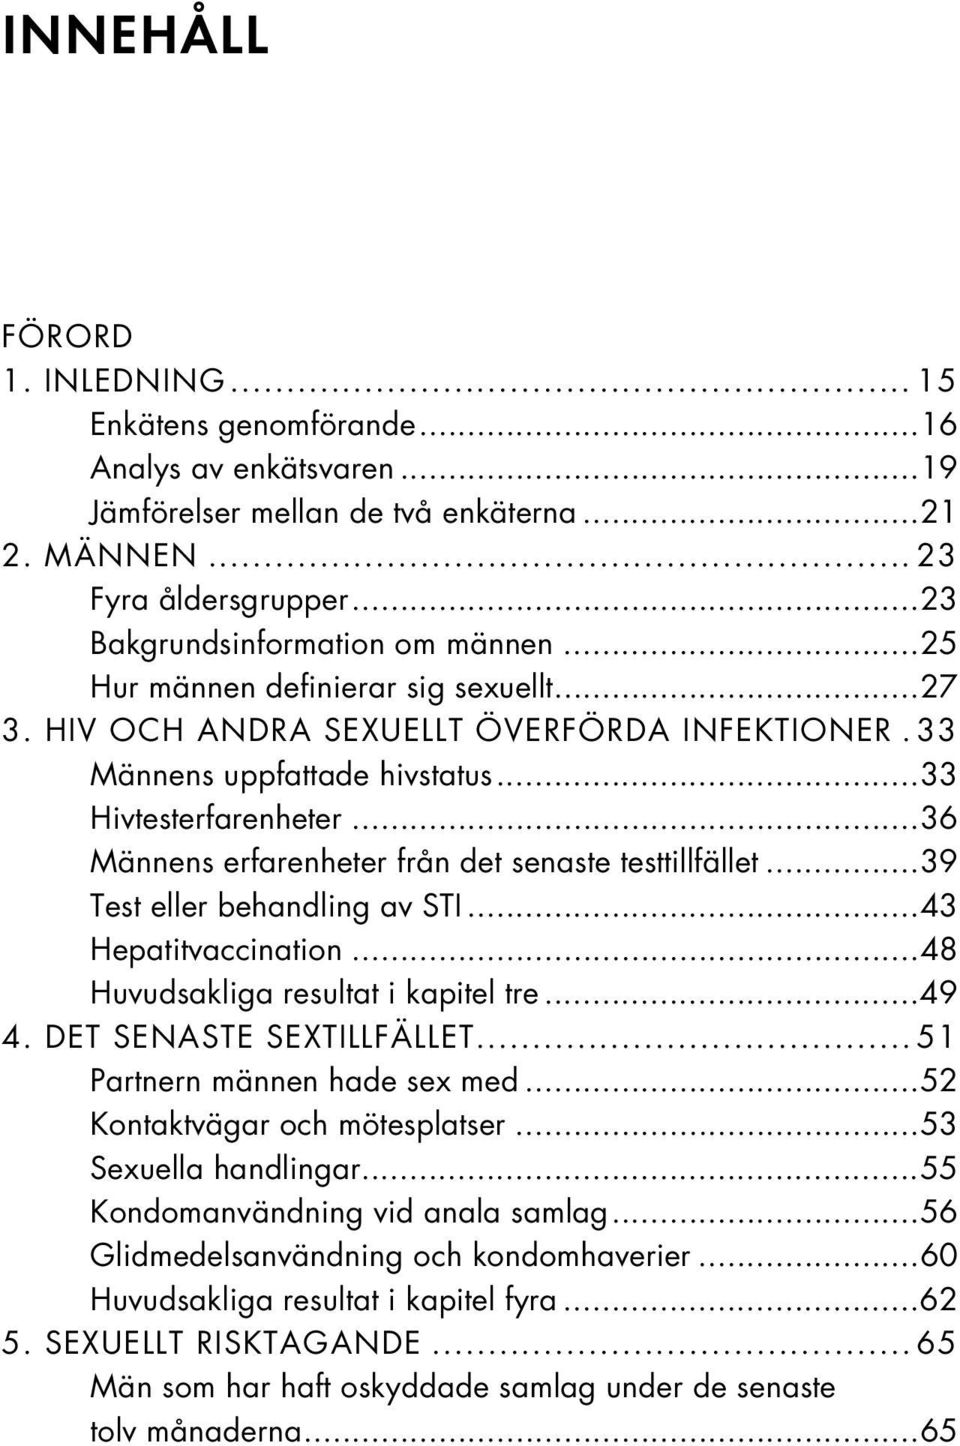 ..36 Männens erfarenheter från det senaste testtillfället...39 Test eller behandling av STI...43 Hepatitvaccination...48 Huvudsakliga resultat i kapitel tre...49 4. DET SENASTE SEXTILLFÄLLET.